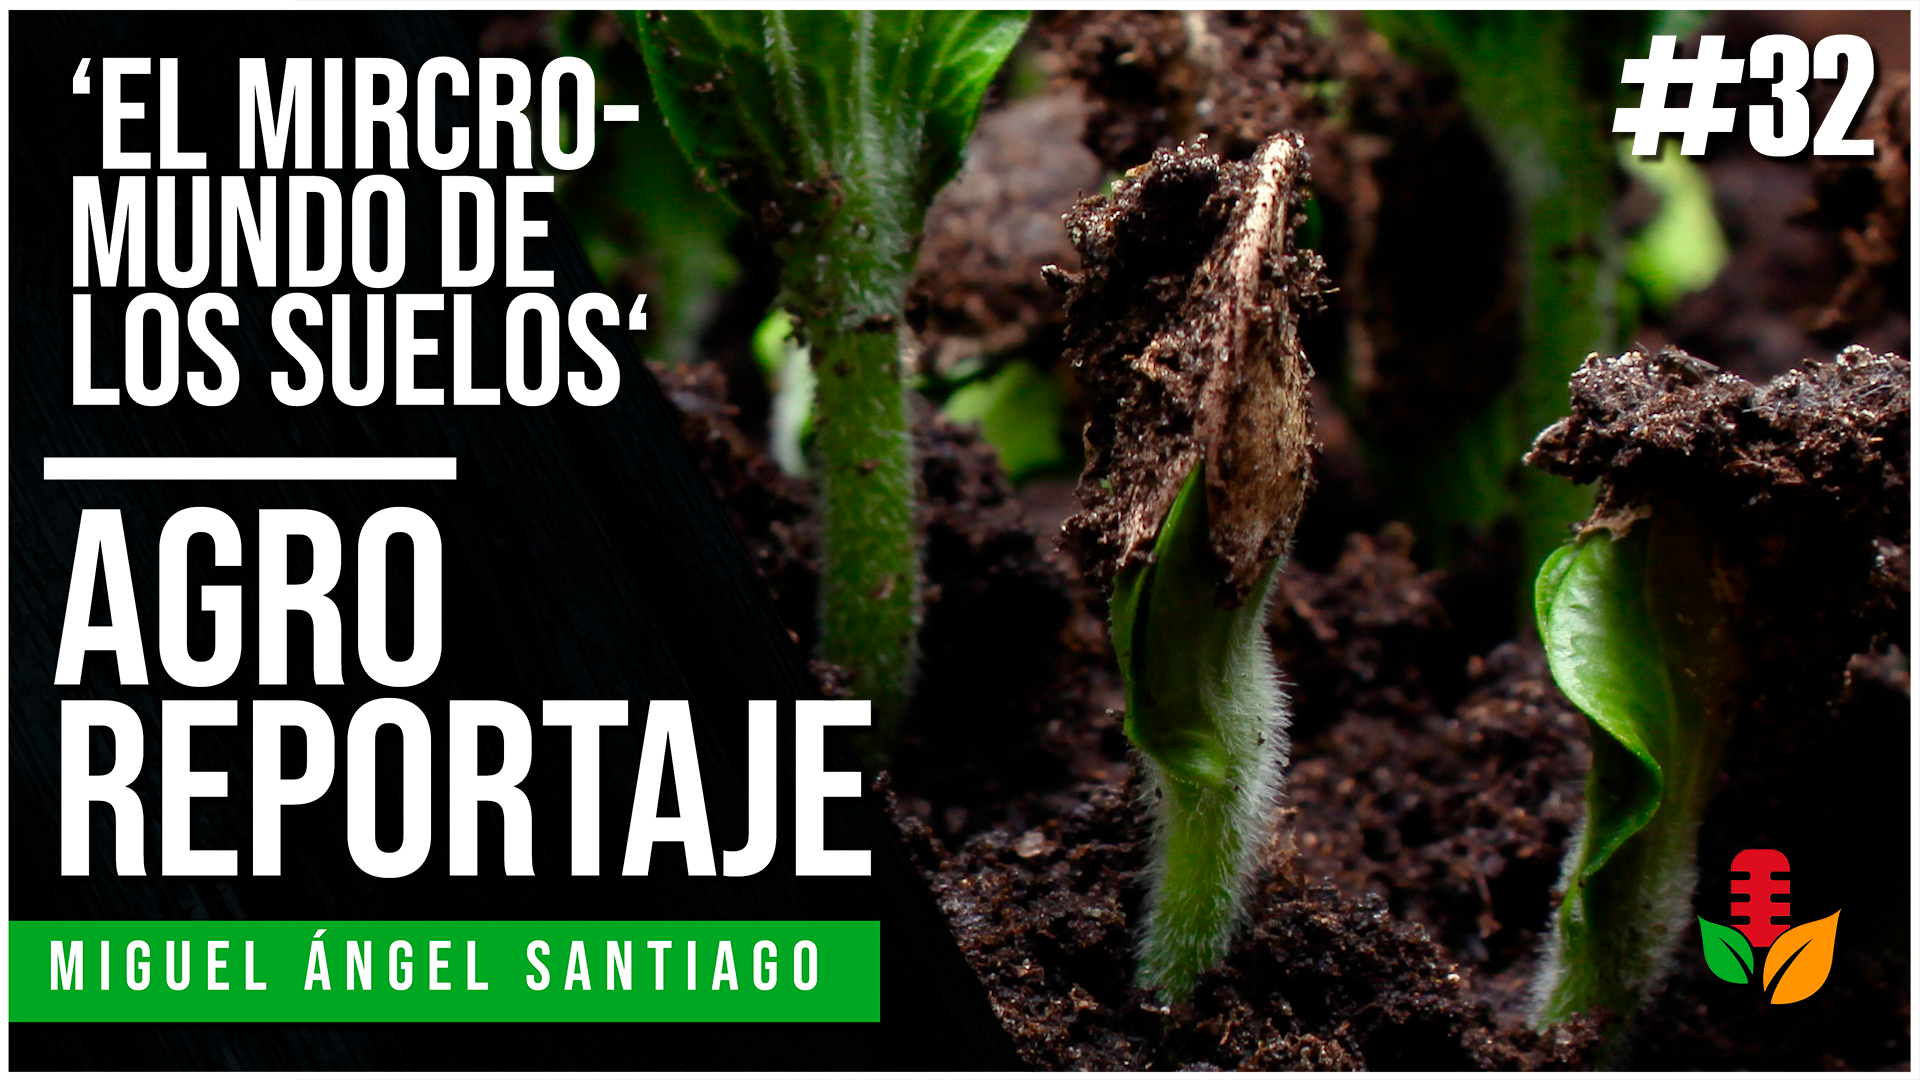 #AgroReportaje 32 || ‘El micromundo de los suelos’